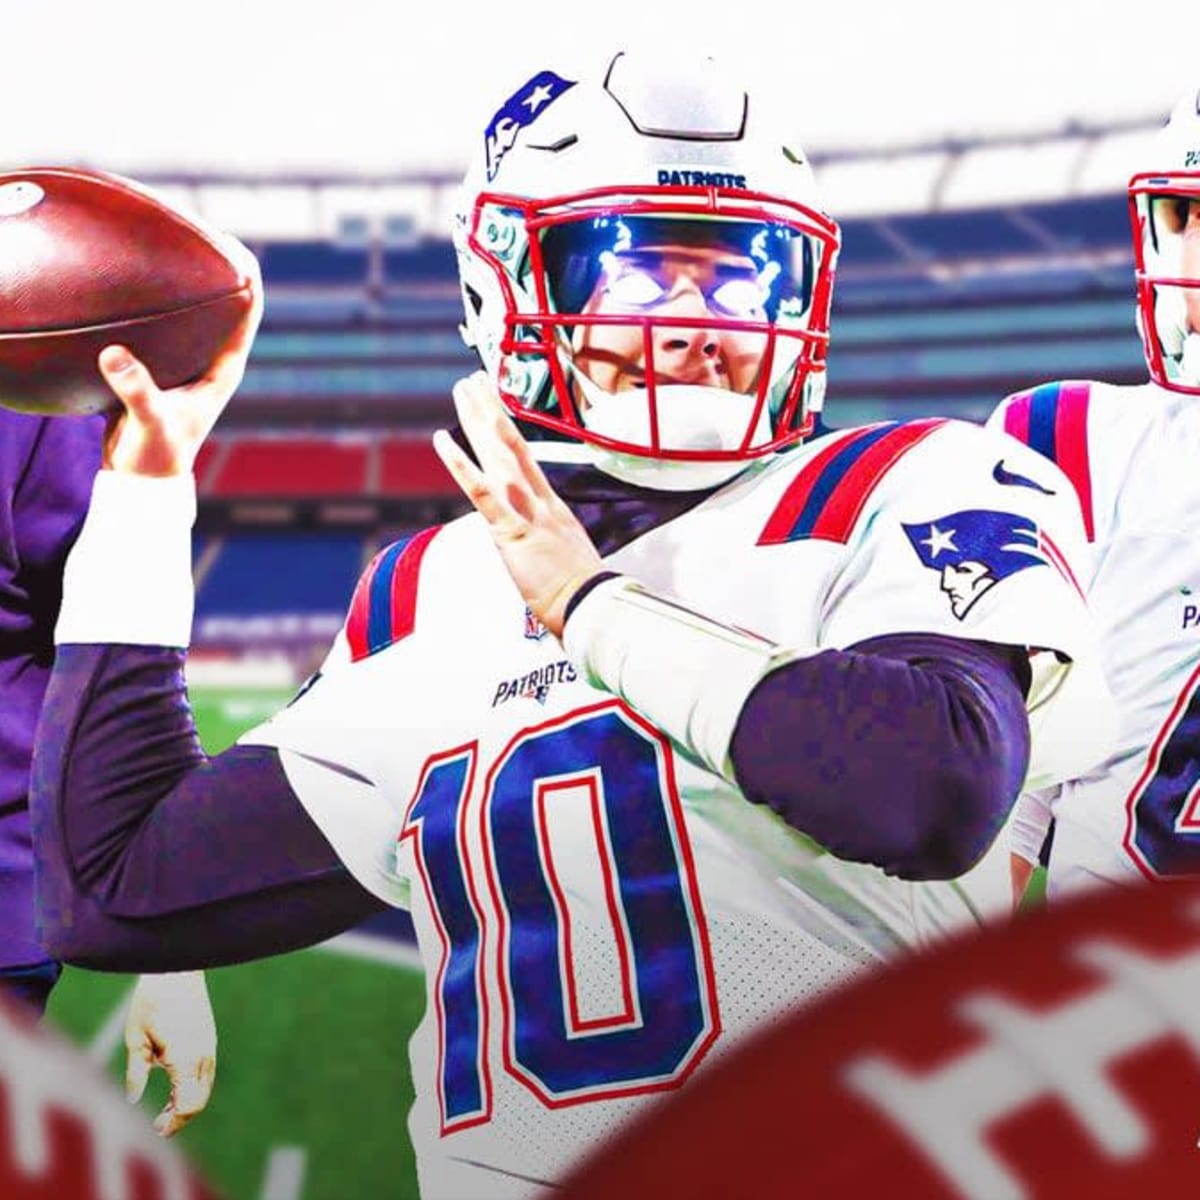 Patriots quarterback Tom Brady named Super Bowl XLIX MVP – The Denver Post